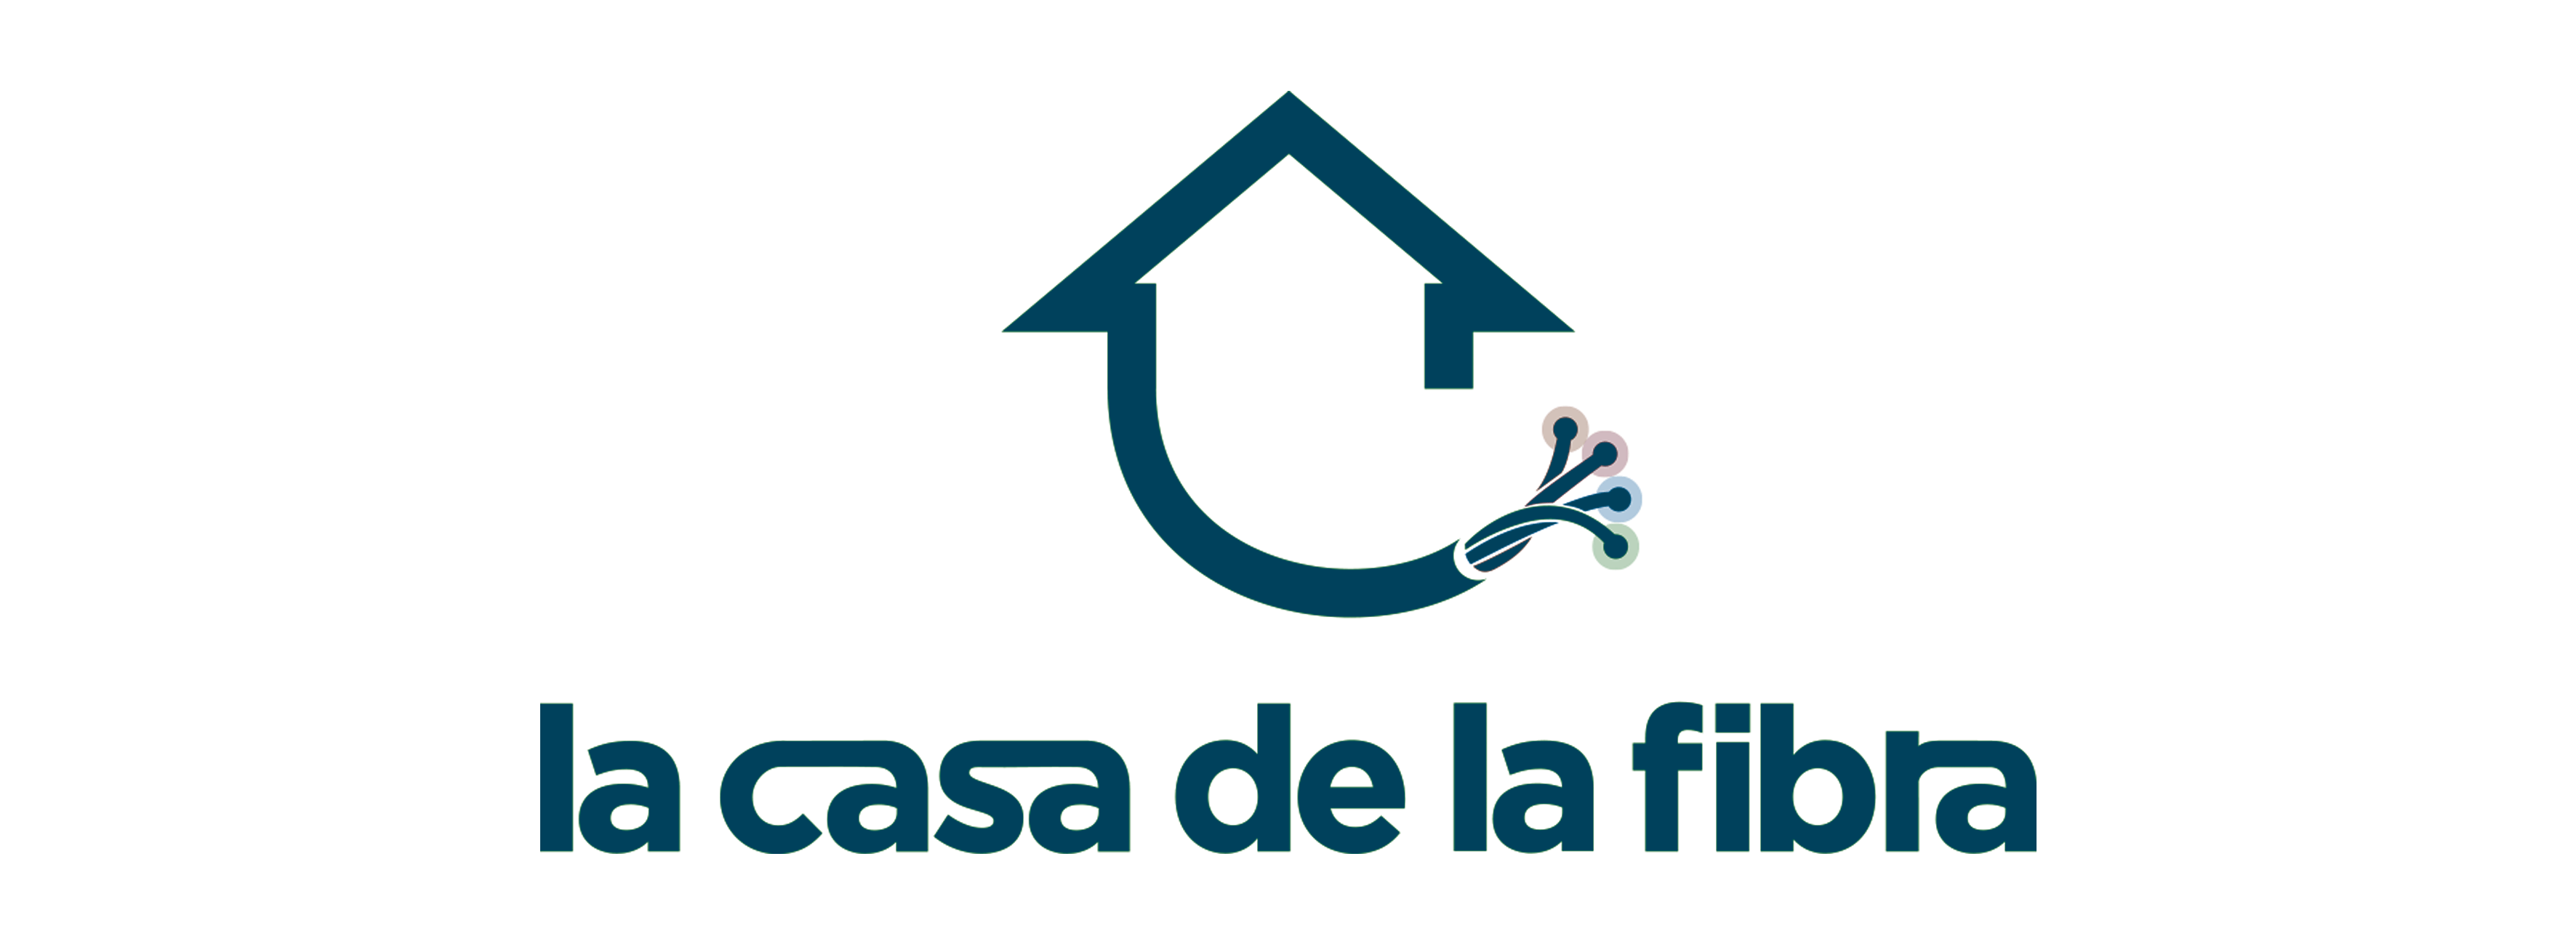 Ikonox-Marketing-digital-Logo-la-casa-de-la-fibra